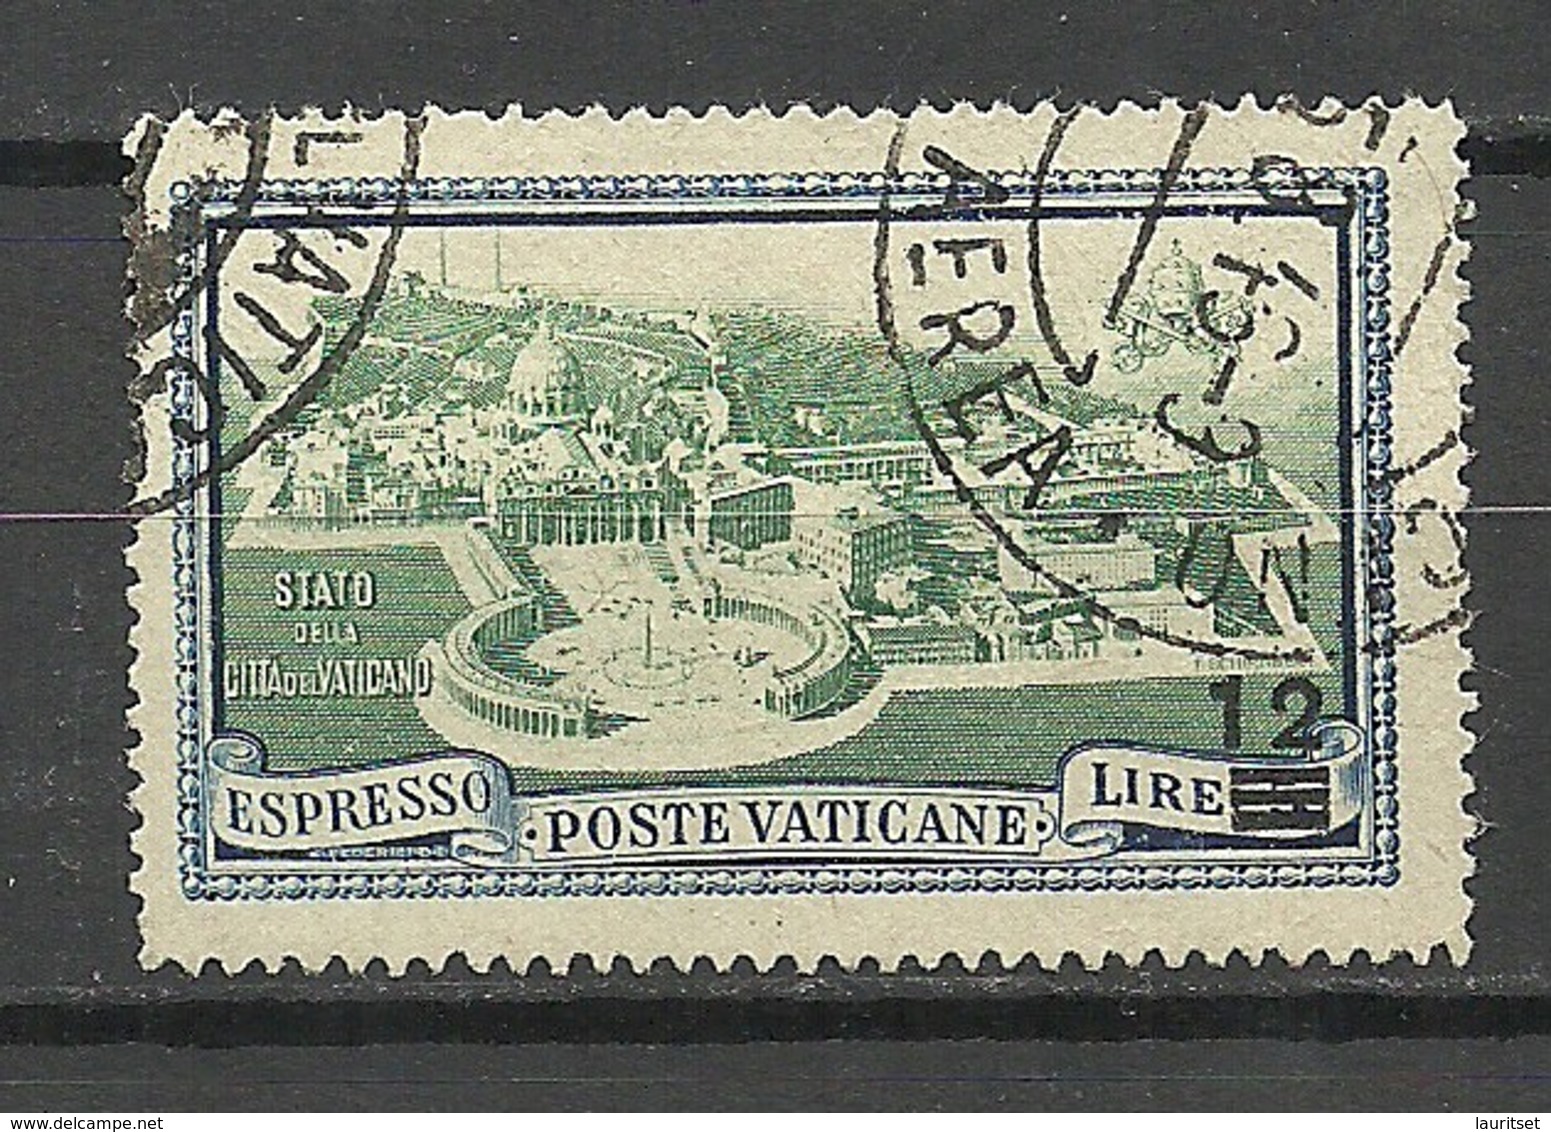 VATICAN Vatikan 1946 Espresso OPT O - Priority Mail